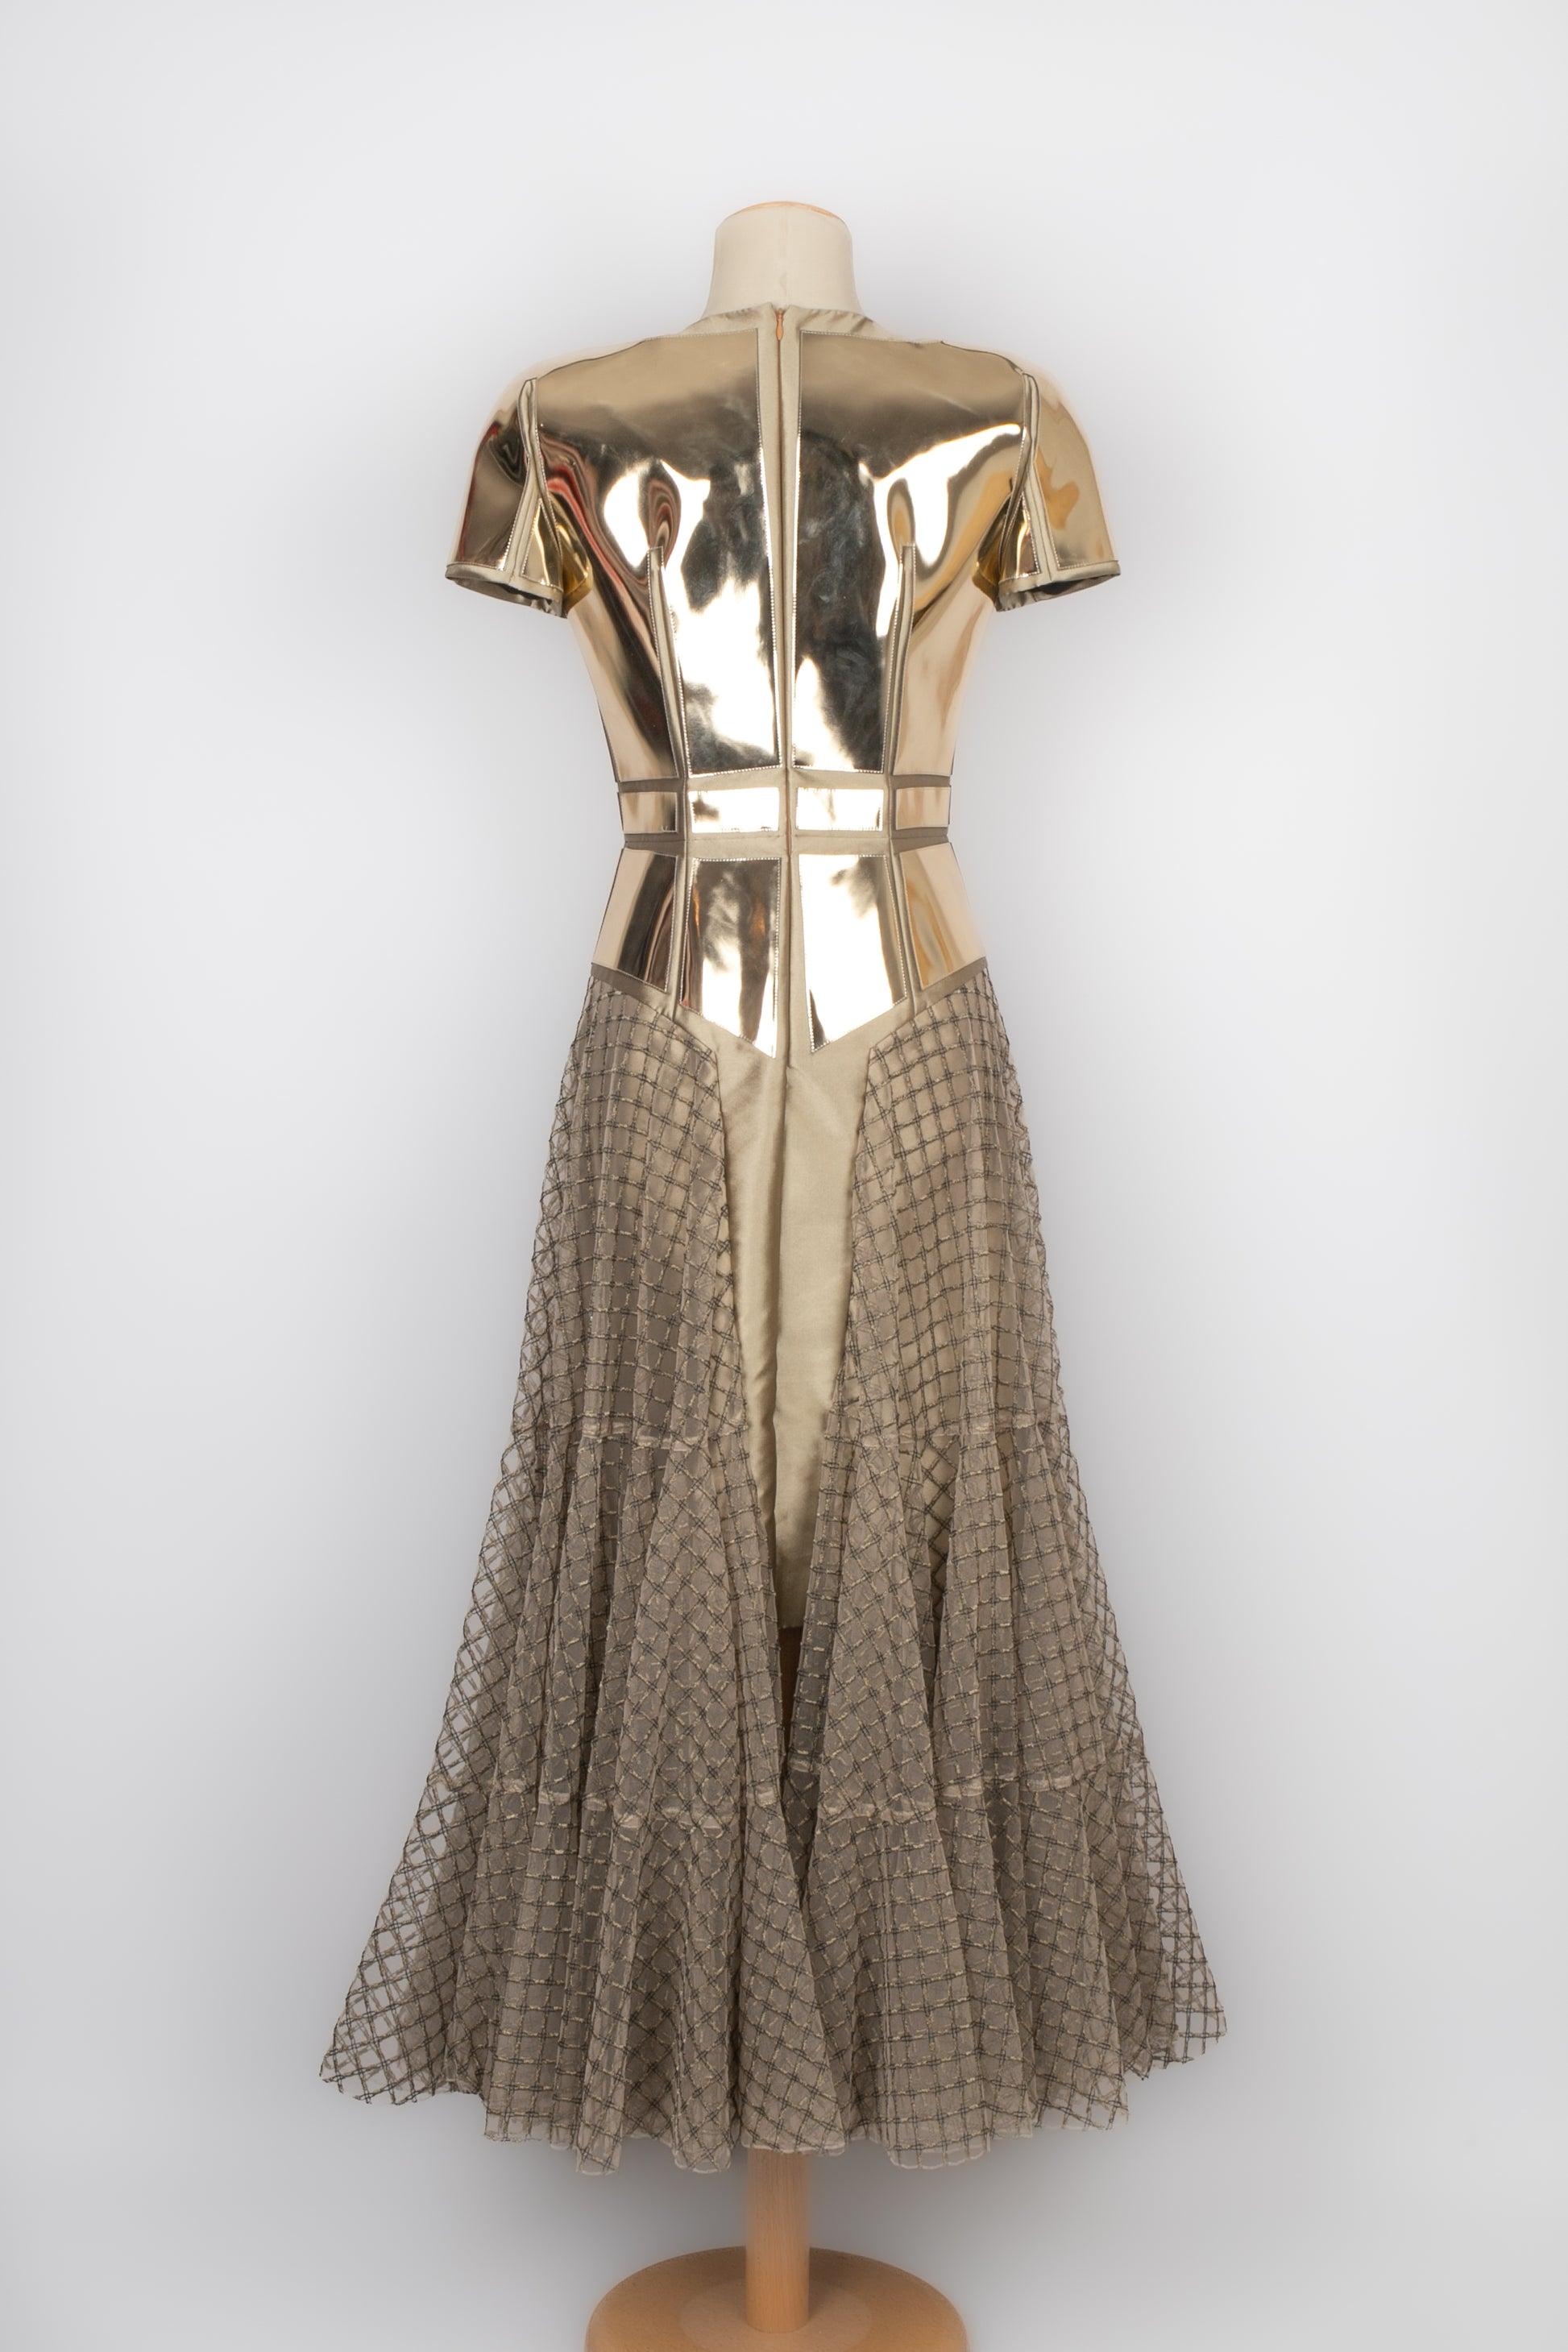 Paule Ka Fishnet, Taffeta and Vinyl Golden Maxi Dress In Excellent Condition For Sale In SAINT-OUEN-SUR-SEINE, FR